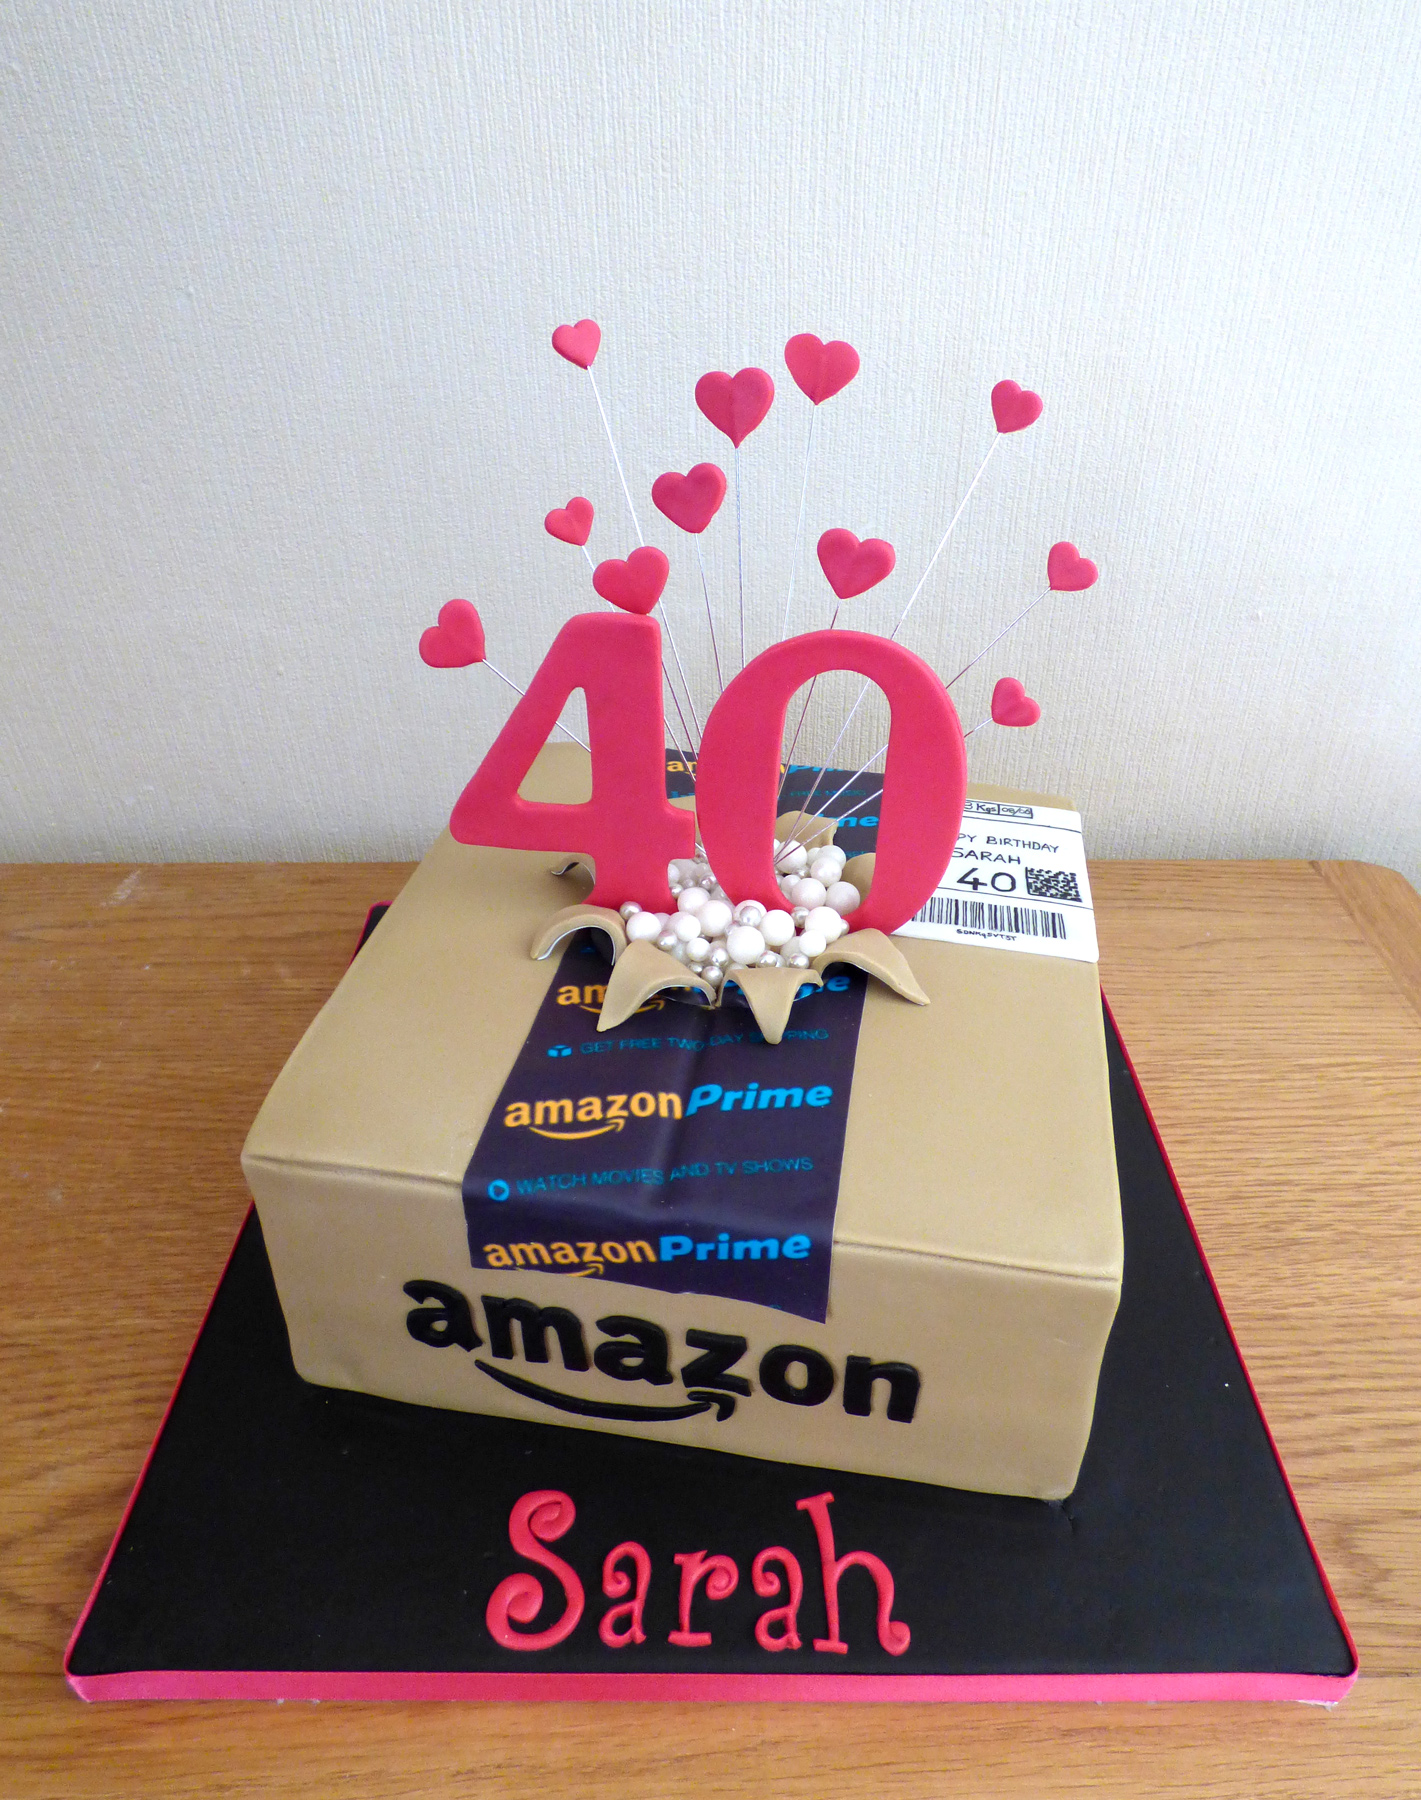 Amazon Box Cake | Amazon Cake | Amazon Package Cake - YouTube